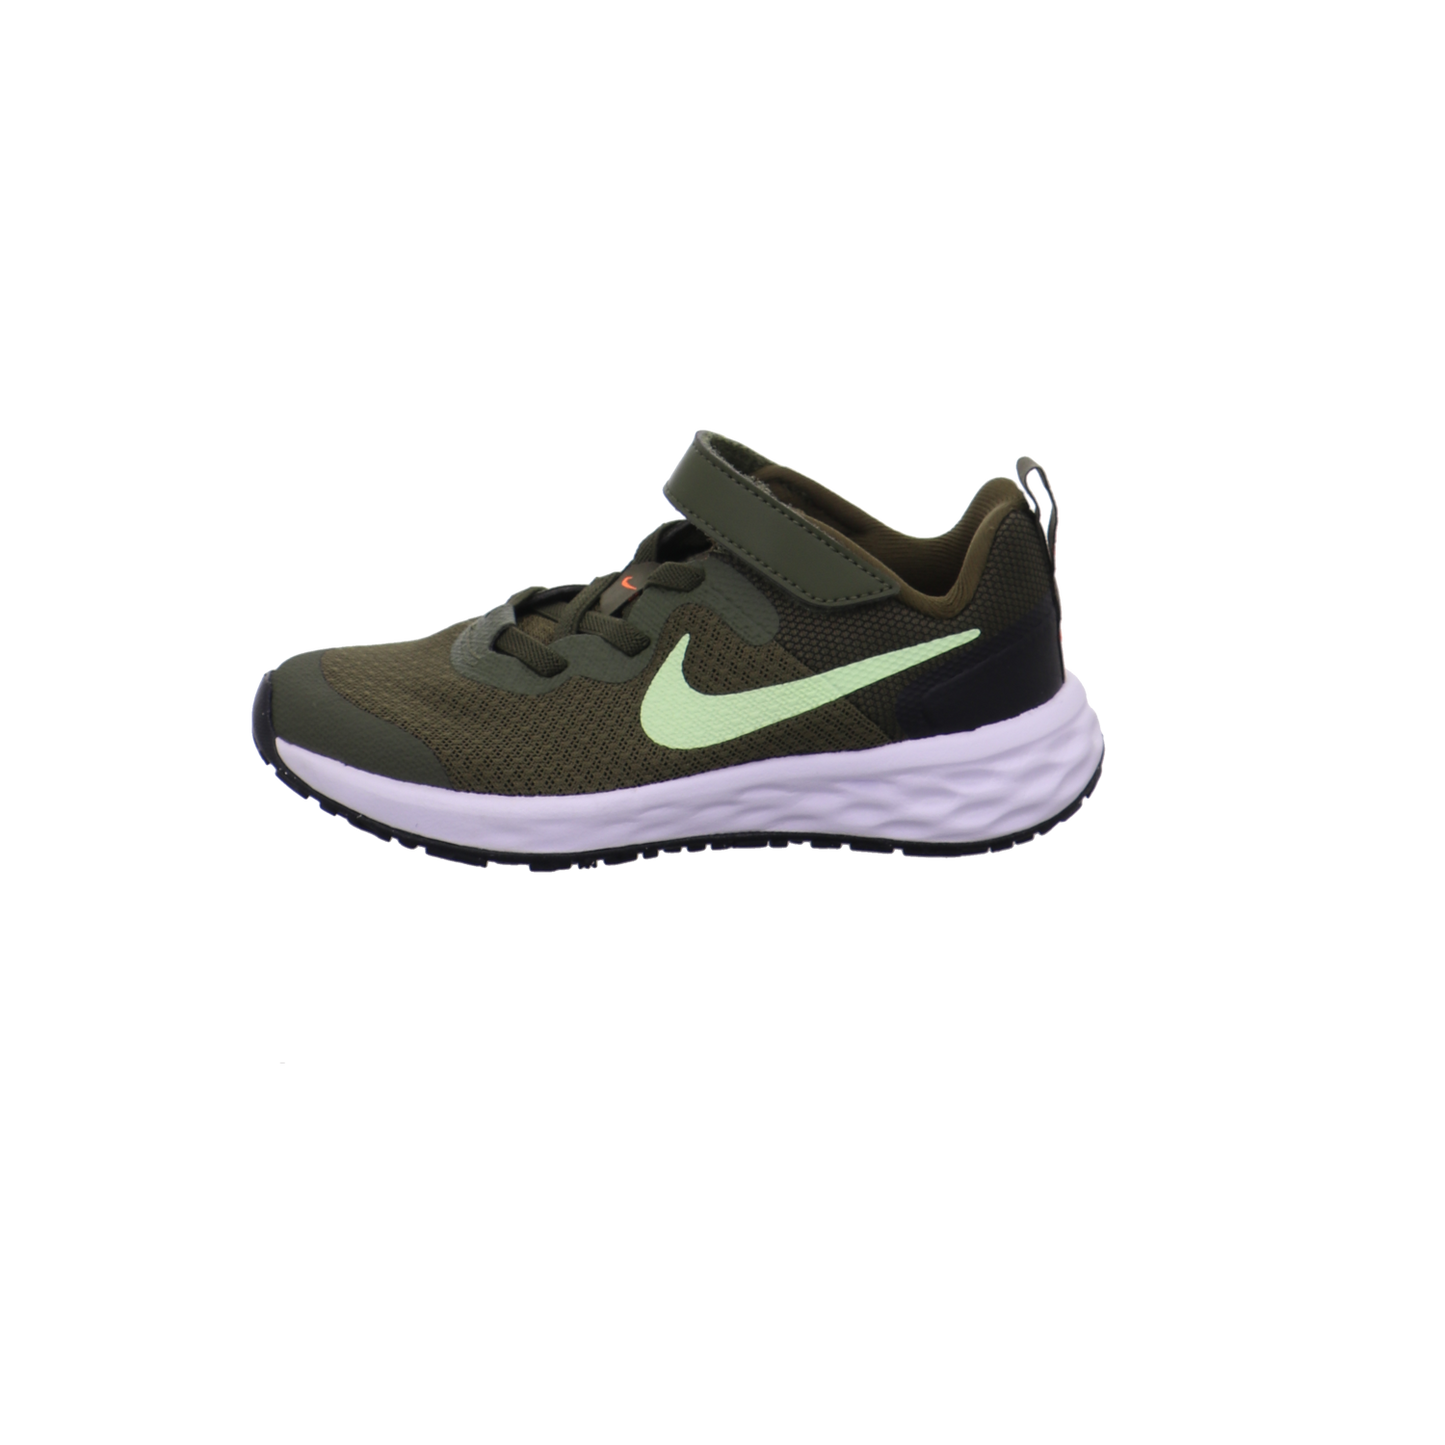 Nike Halbschuhe grün Bild1